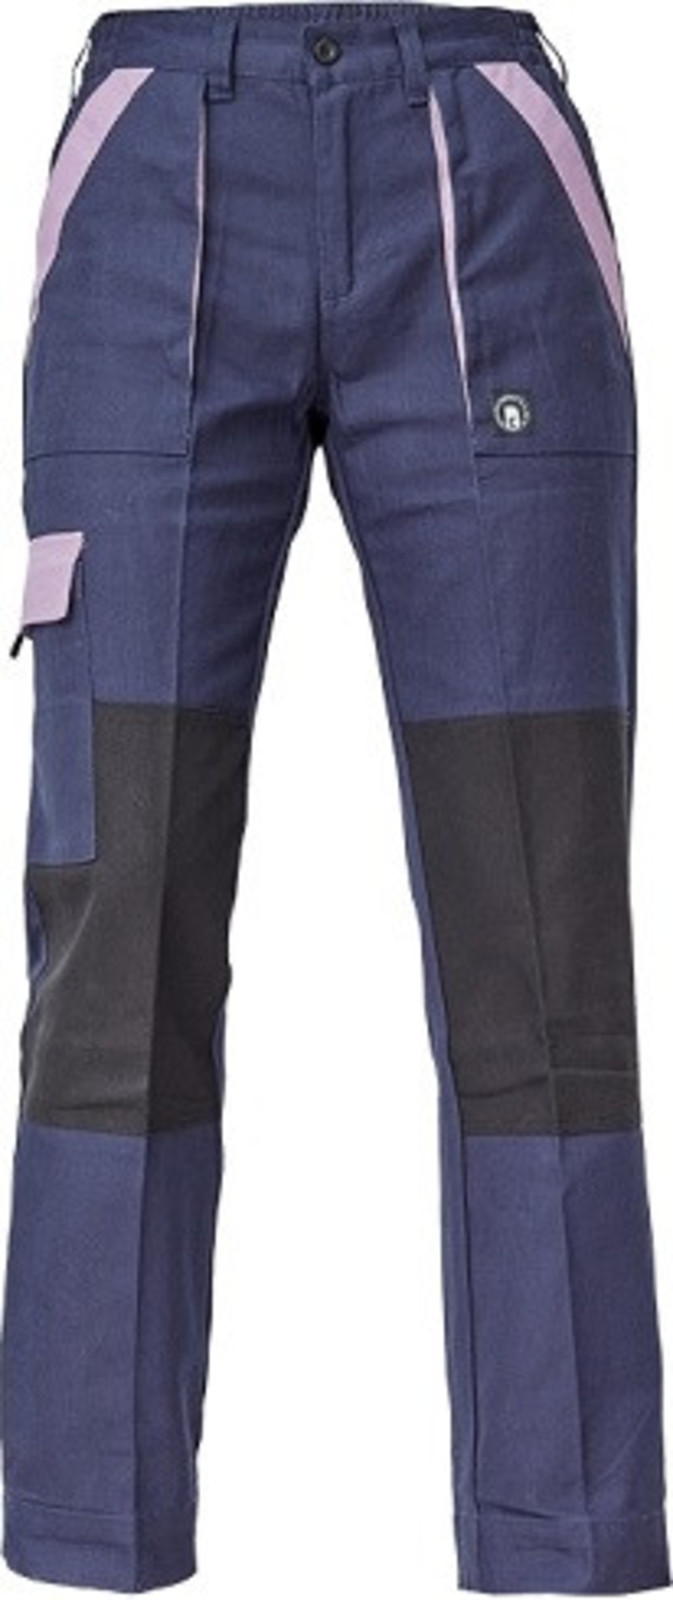 Dámske bavlnené montérky Cerva Max Neo Lady - veľkosť: 50, farba: navy/fialová